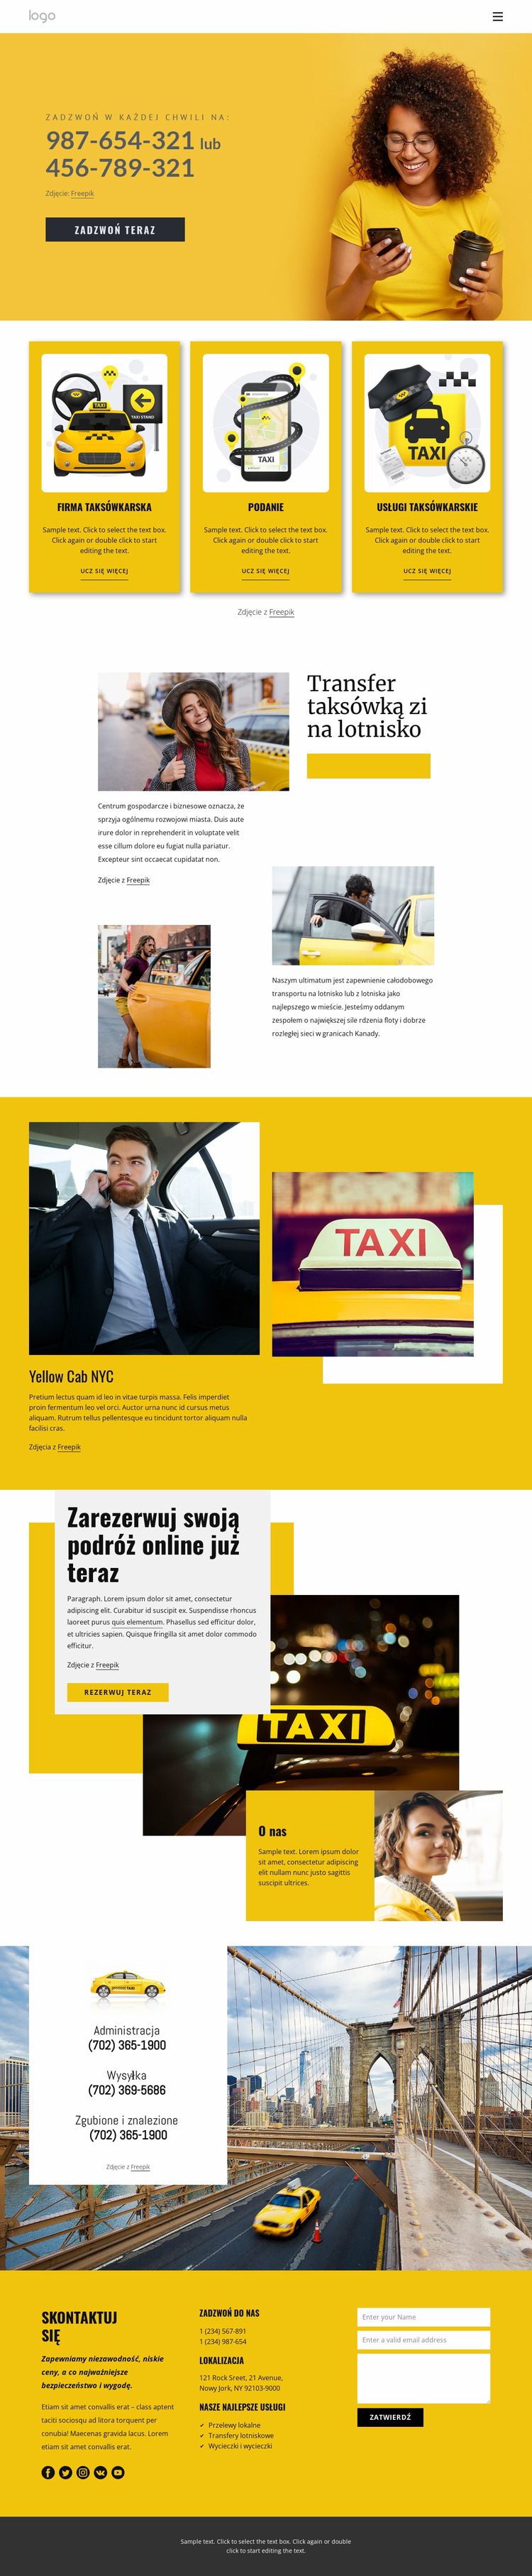 Jakość usług taksówkowych Szablon Joomla